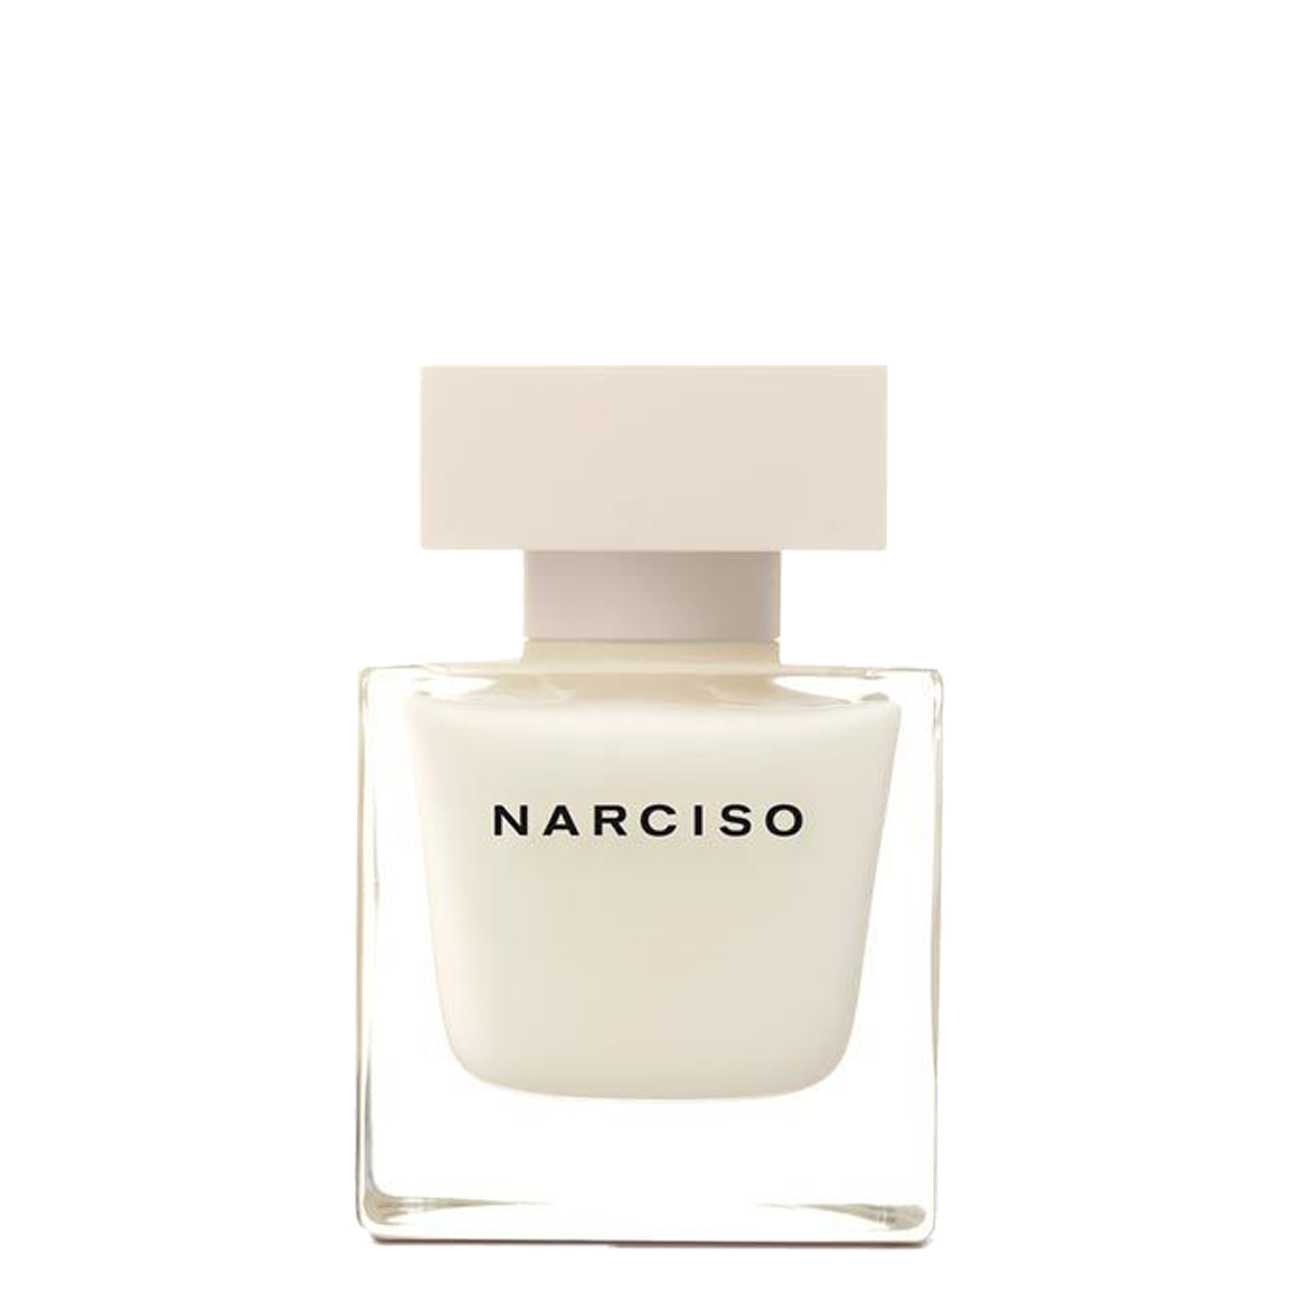 Apa de Parfum Narciso Rodriguez NARCISO 50ml cu comanda online